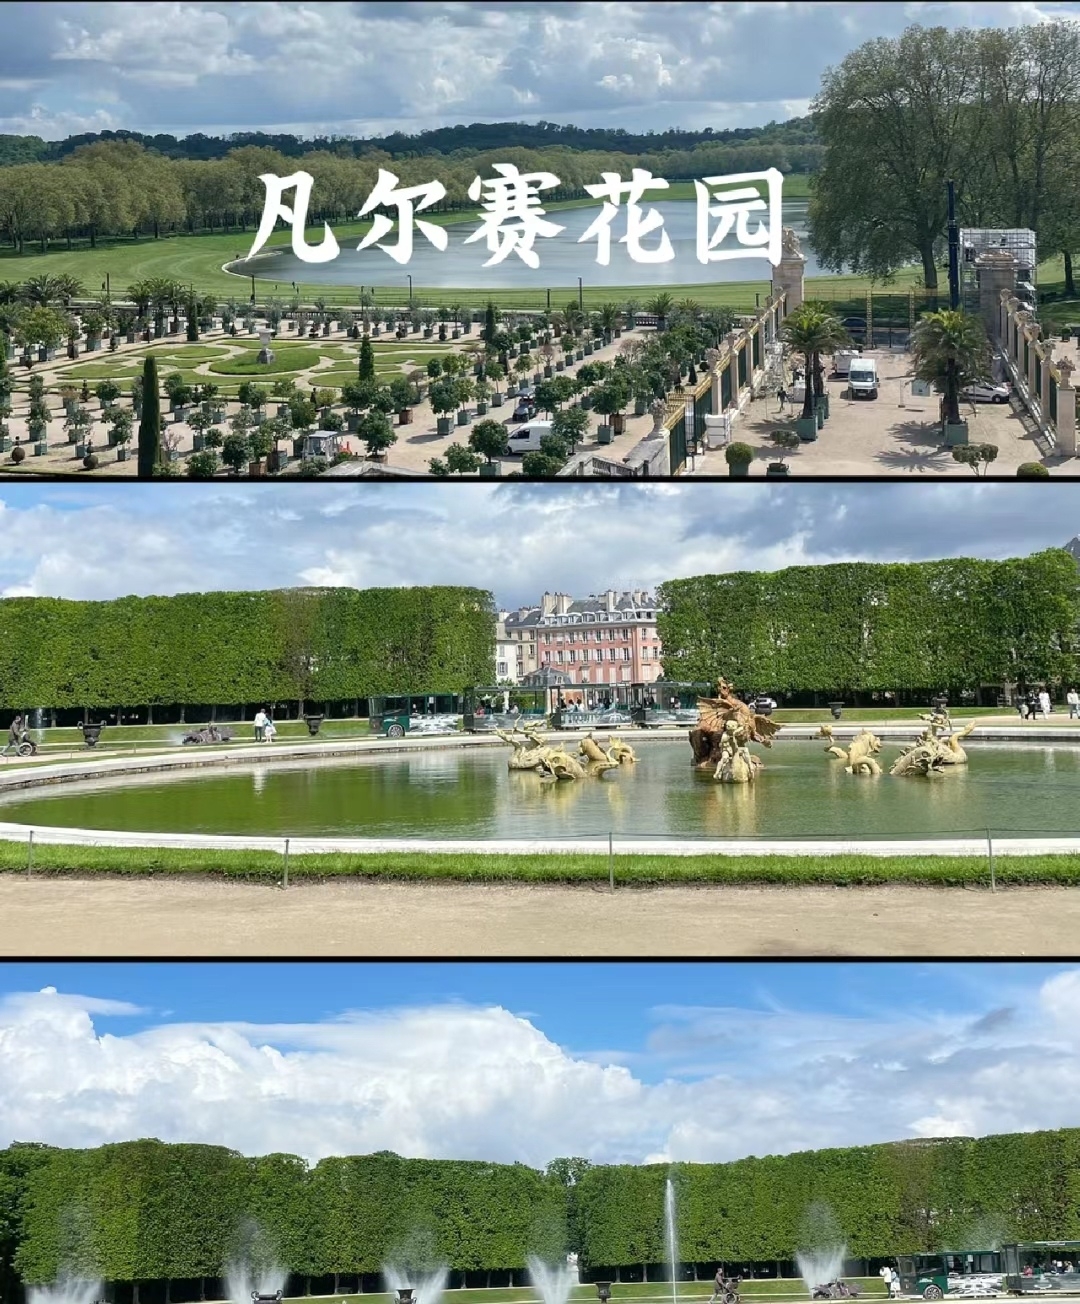 ✨凡尔赛宫游玩攻略👇👇👇  宝子们😎，今天来给大家分享法国凡尔赛宫的游玩攻略🎉！  🏰地址：法国巴黎